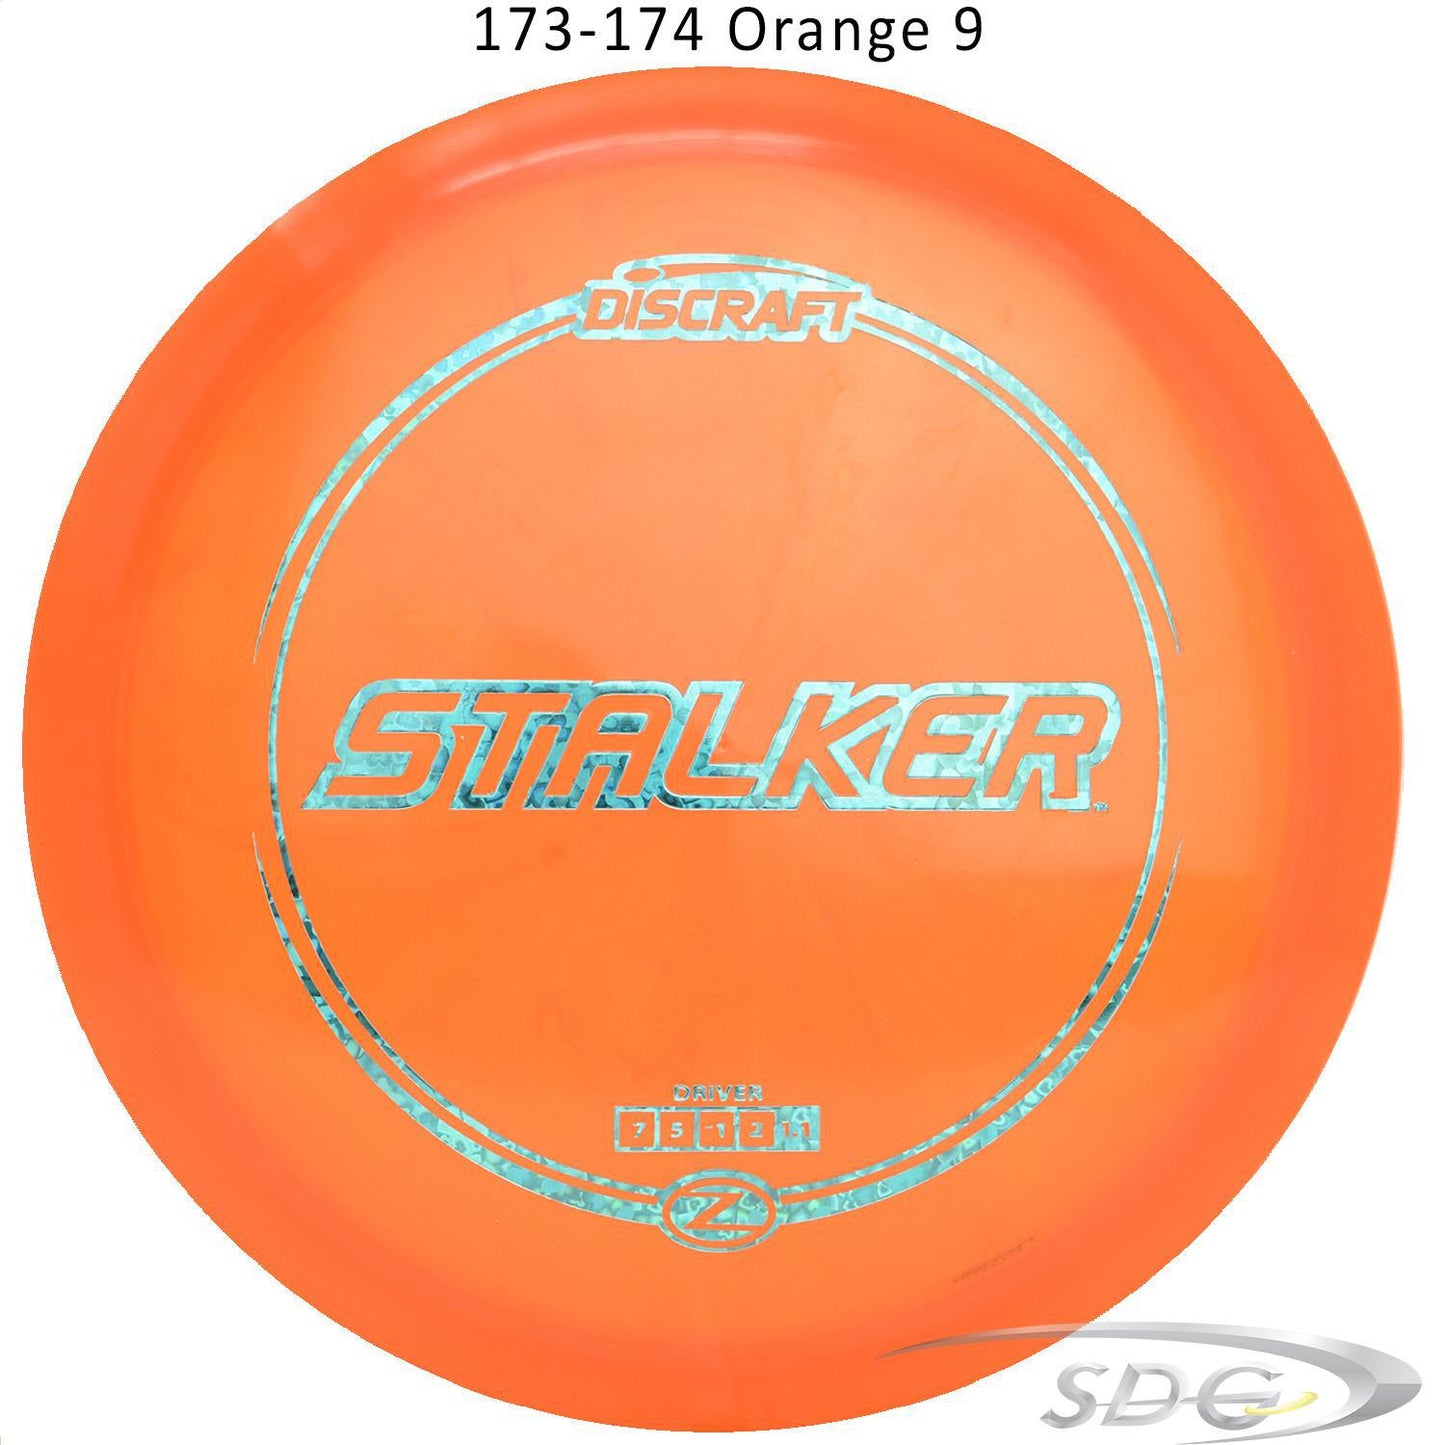 discraft-z-line-stalker-disc-golf-fairway-driver 173-174 Orange 9